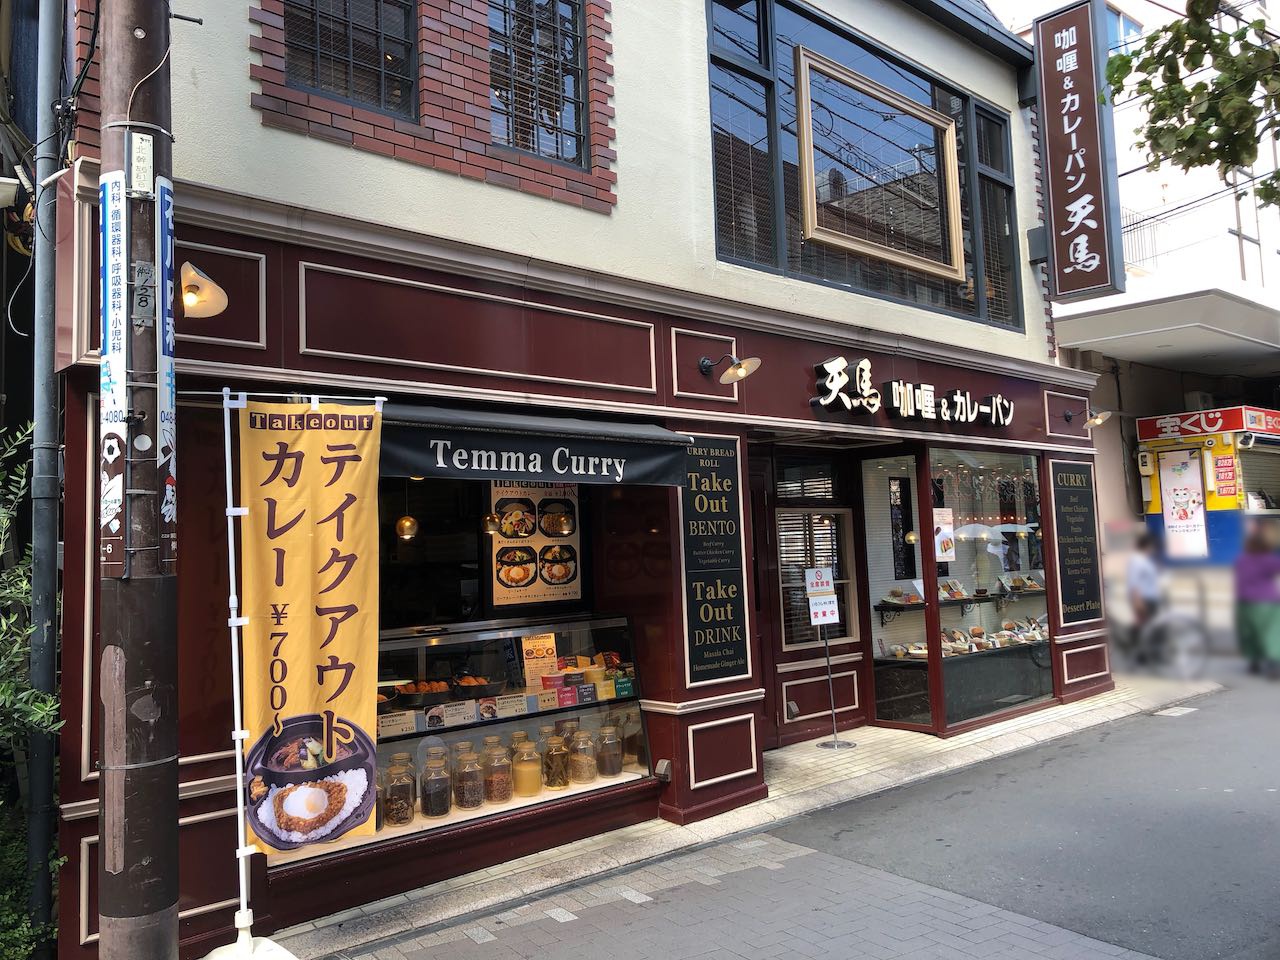 浦和駅前 カレー屋のつくるカレーパンを食しに 天馬 咖喱 カレーパン 浦和店 に行ってみました 越谷レイクタウン散歩